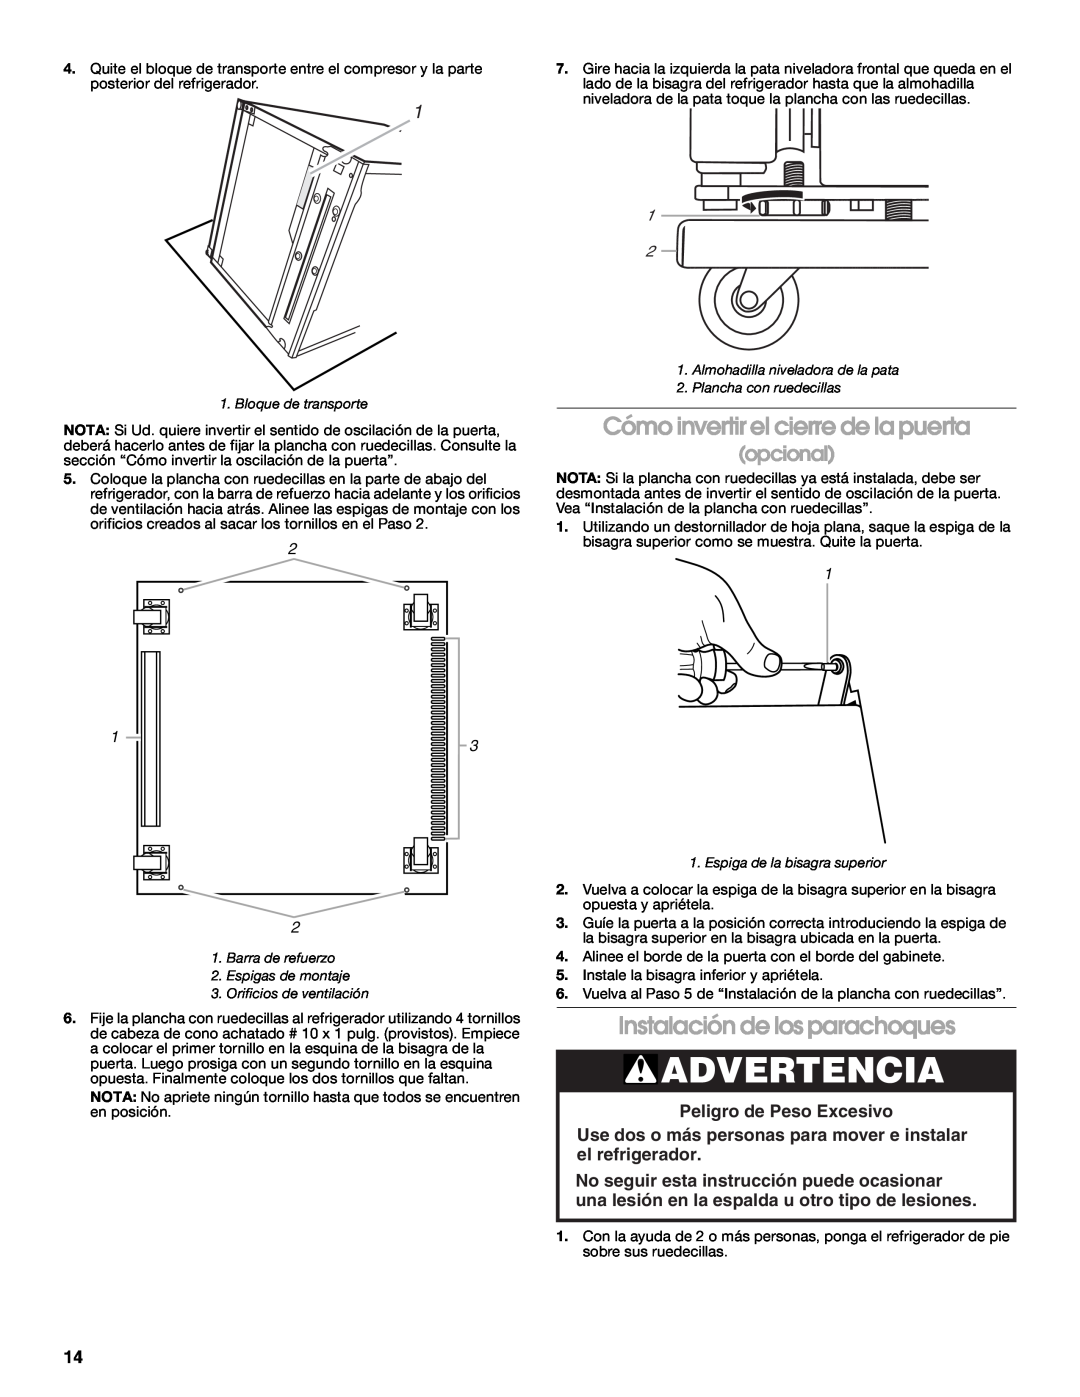 Whirlpool GARF06XXMG00 manual Cómo invertir el cierre de la puerta, Instalación de los parachoques, opcional, Advertencia 